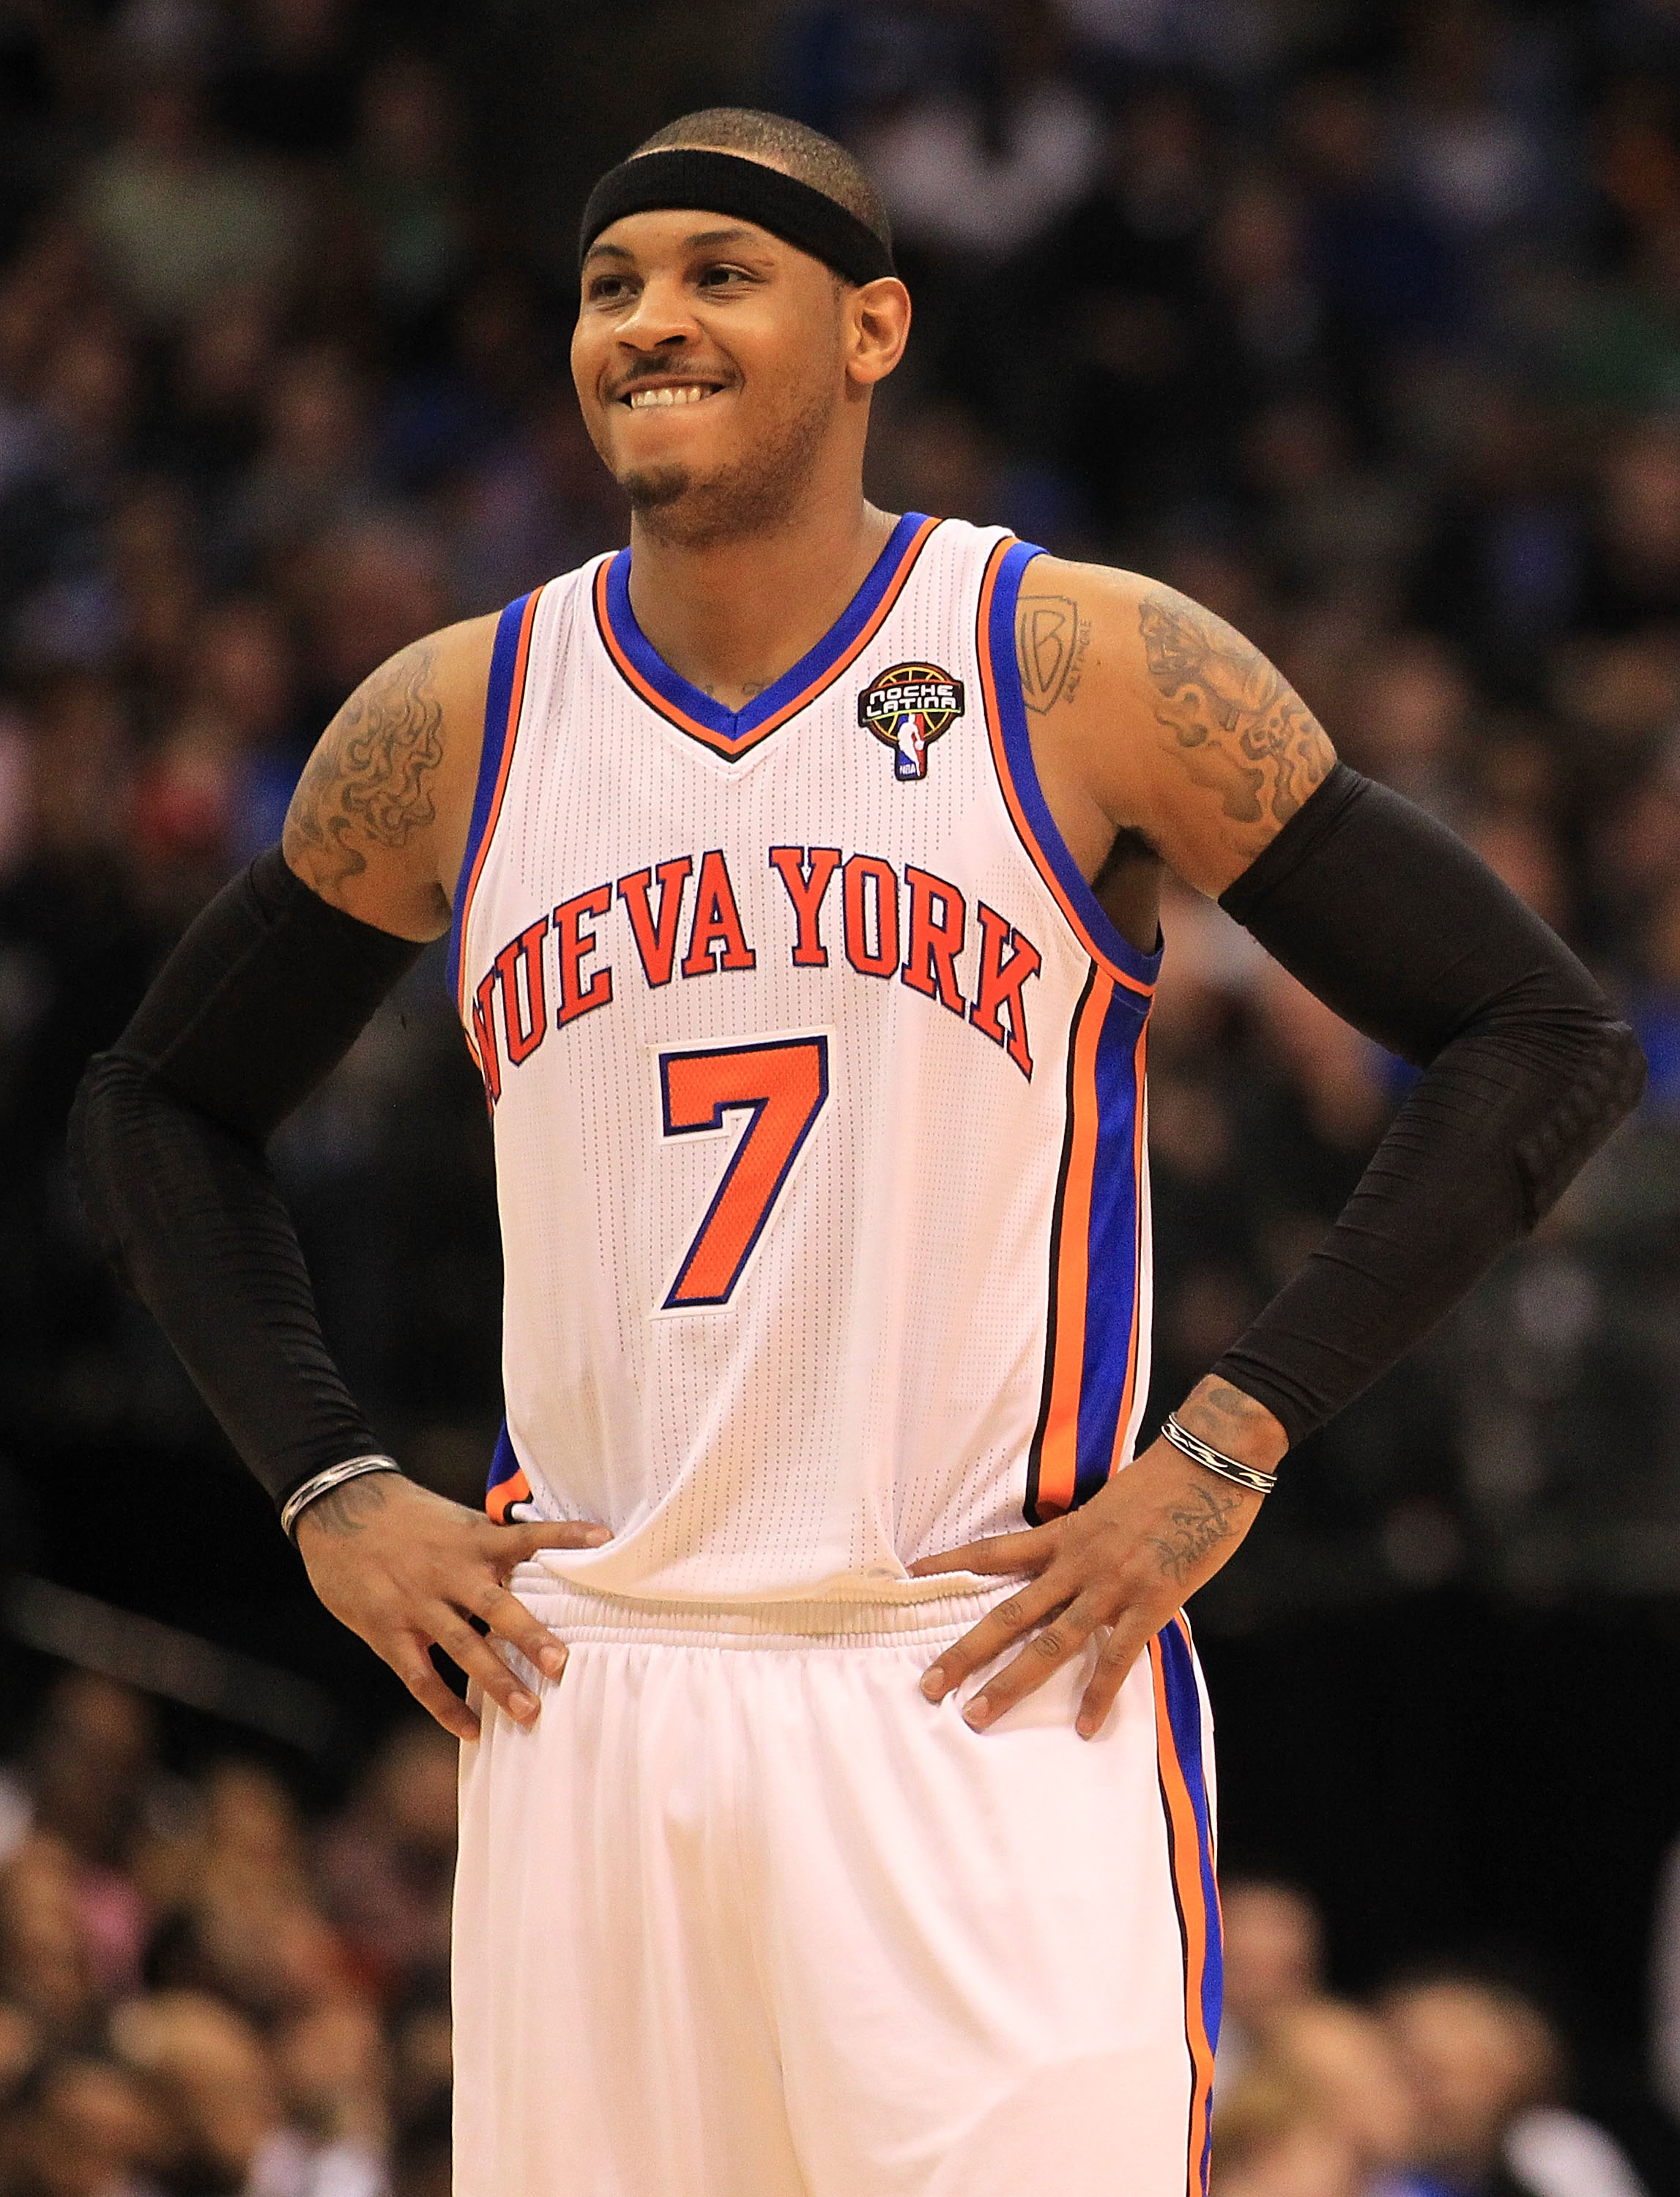 High Quality】Men's New Original NBA New York Knicks #7 Carmelo